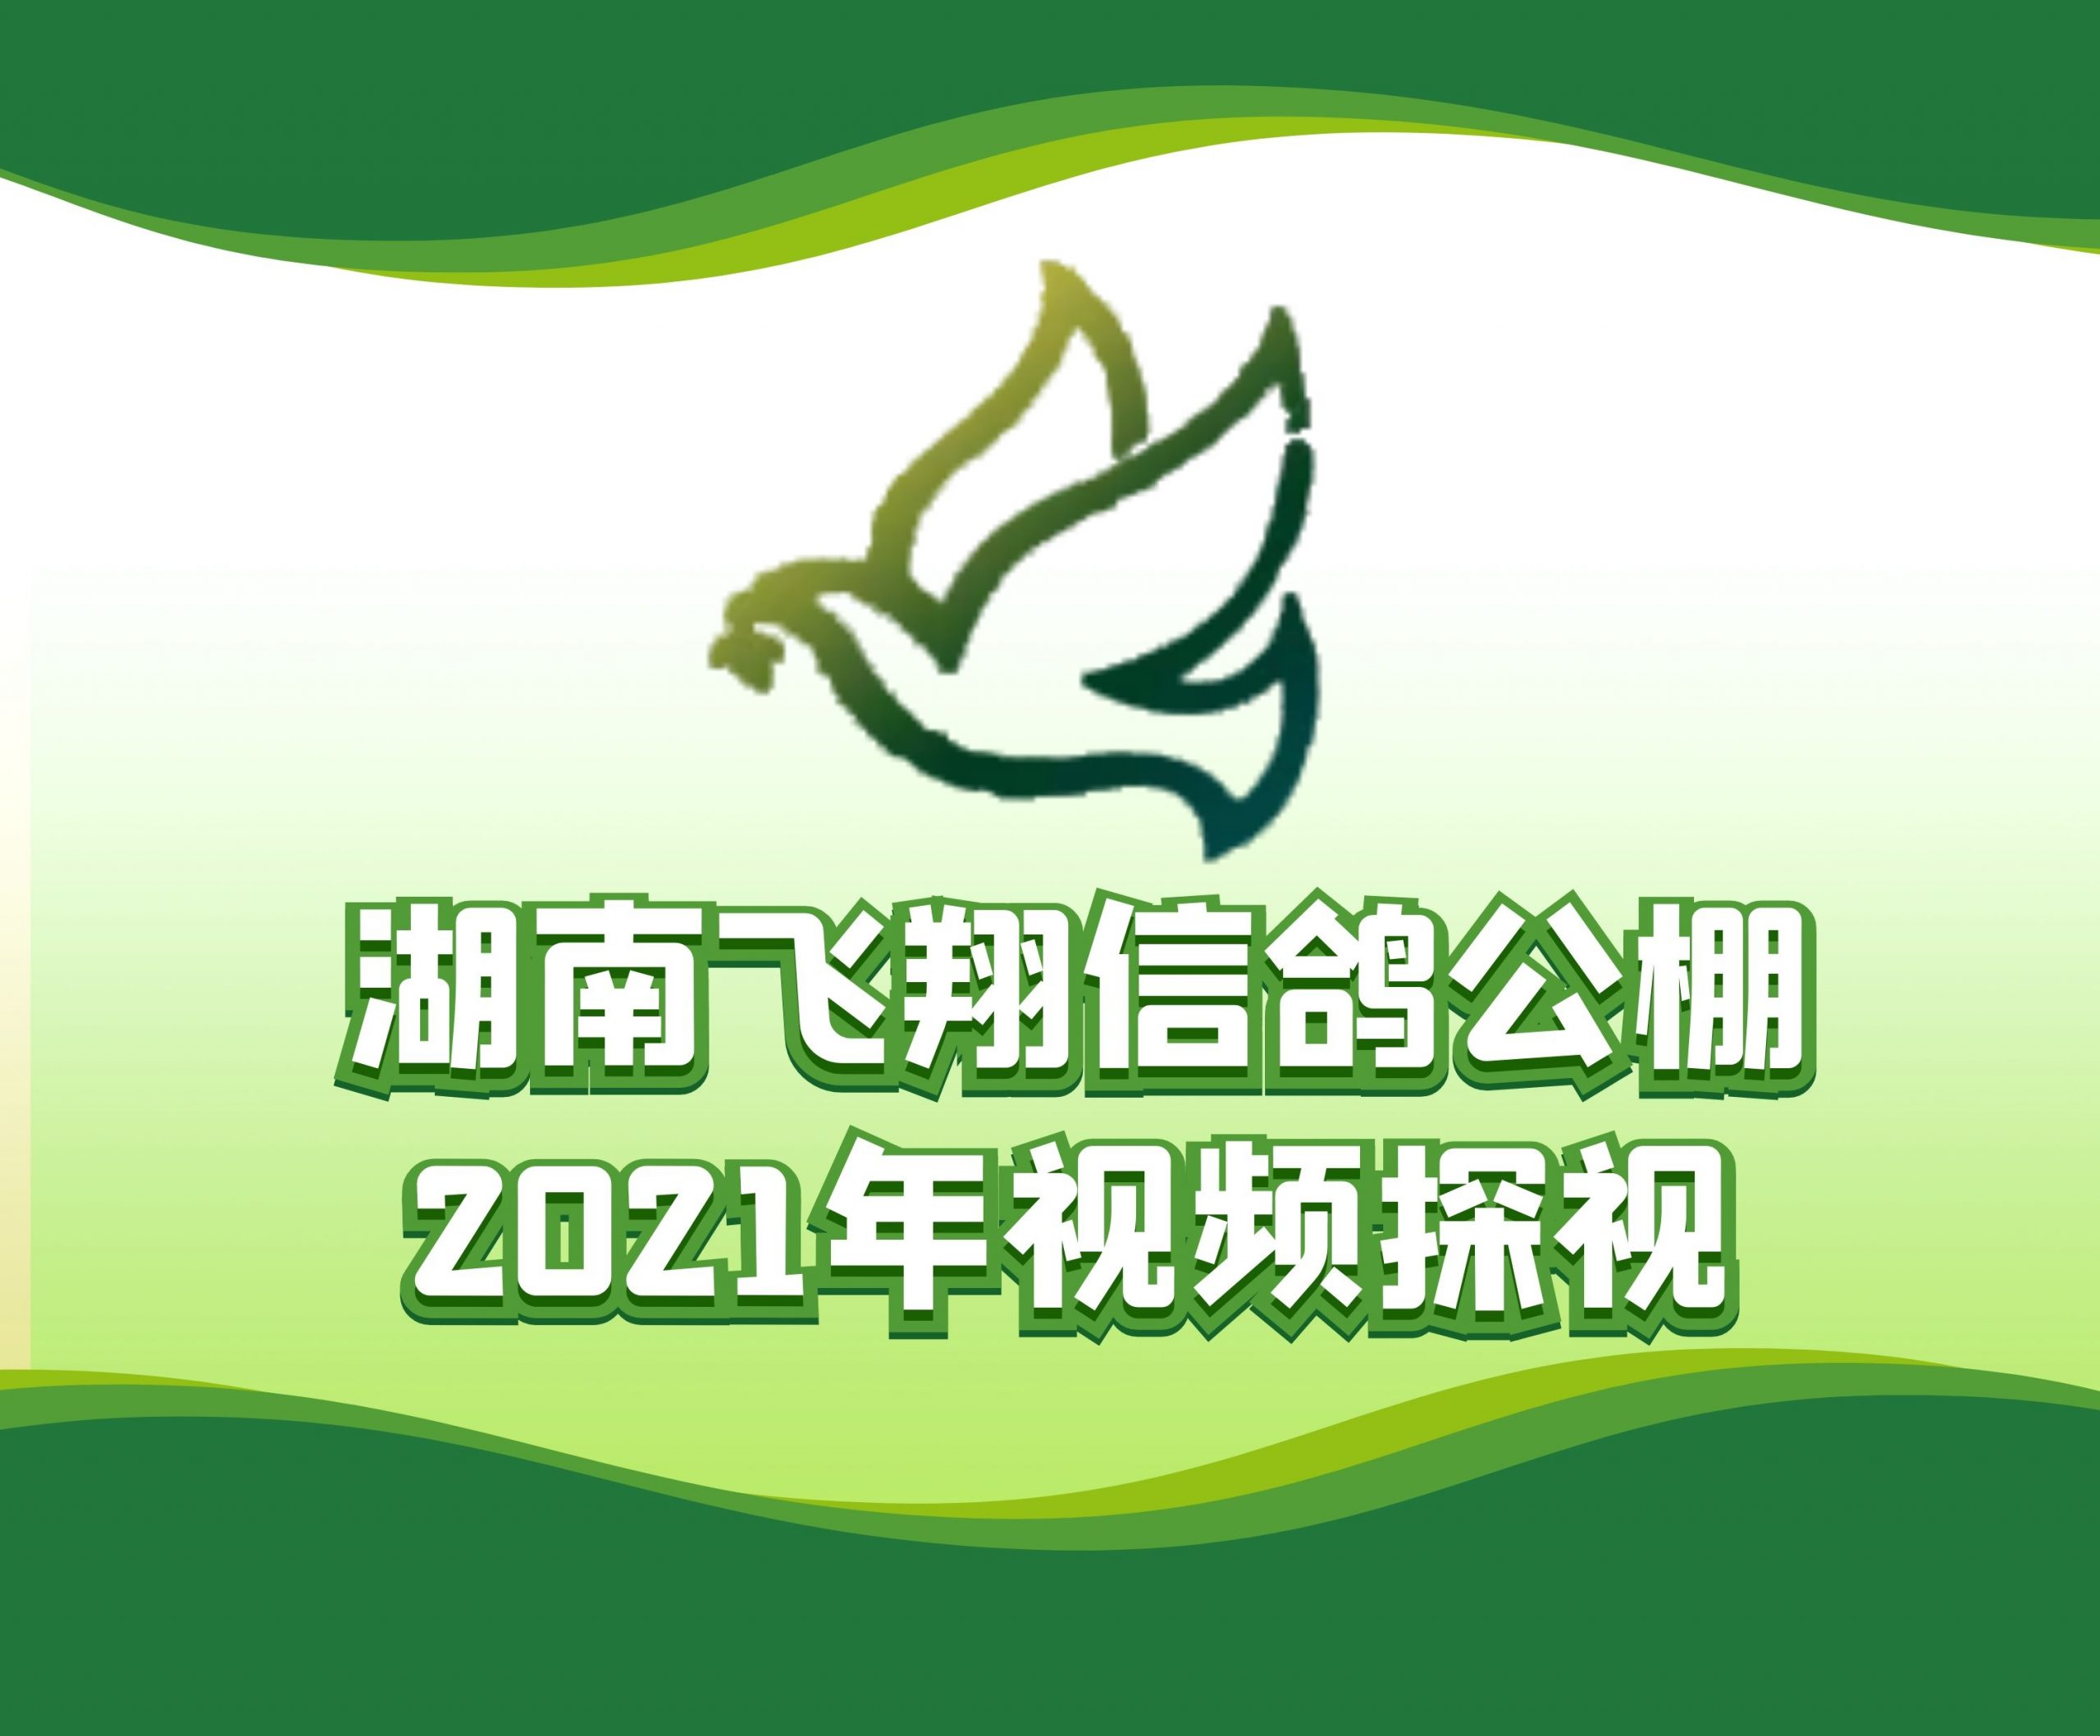 杨志林-2021-18-0055281